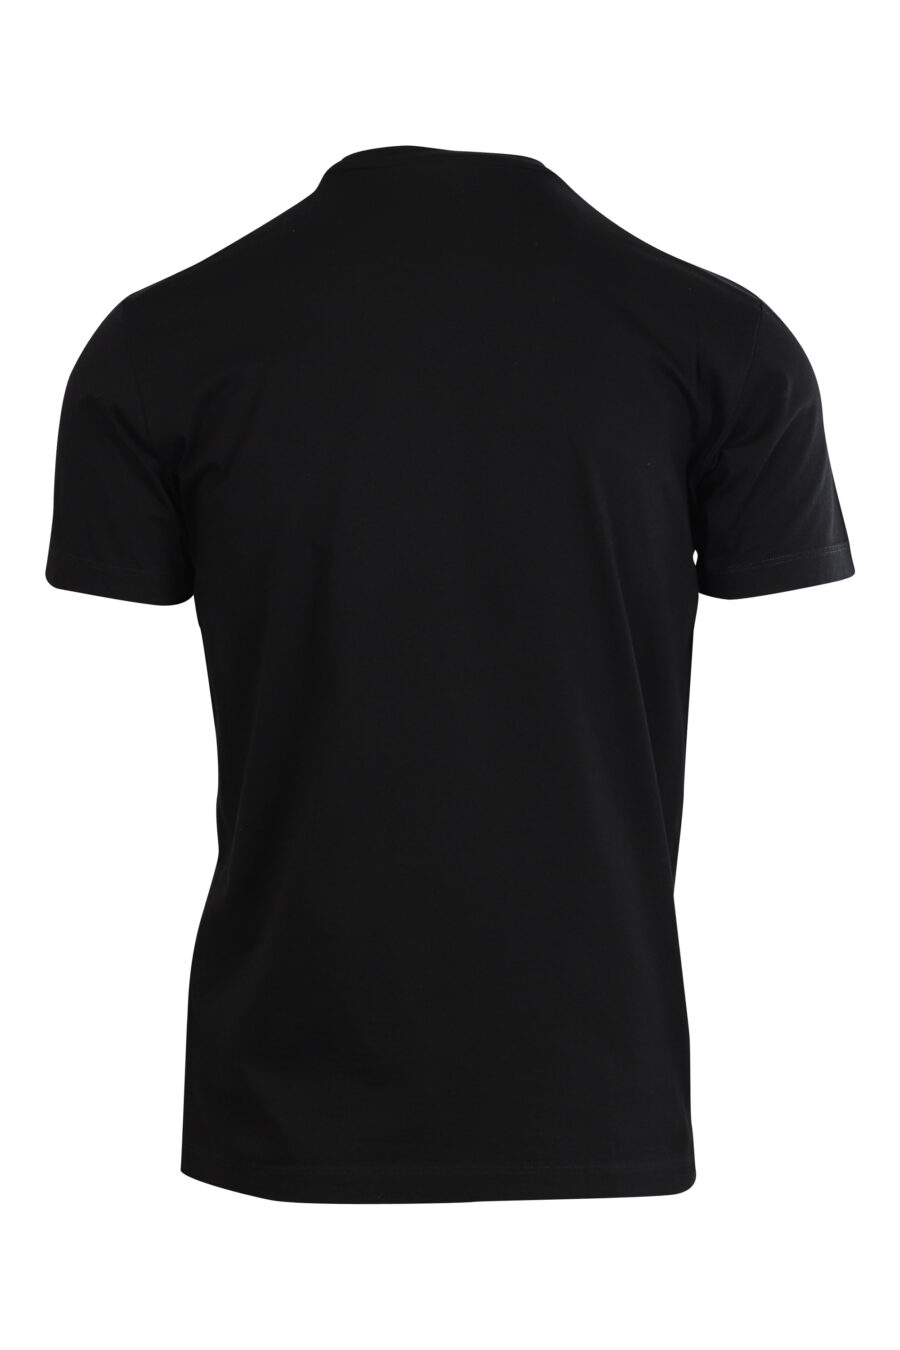 Schwarzes T-Shirt mit türkisem und fuchsiafarbenem "icon pixeled" Maxilogo - 8052134981269 2